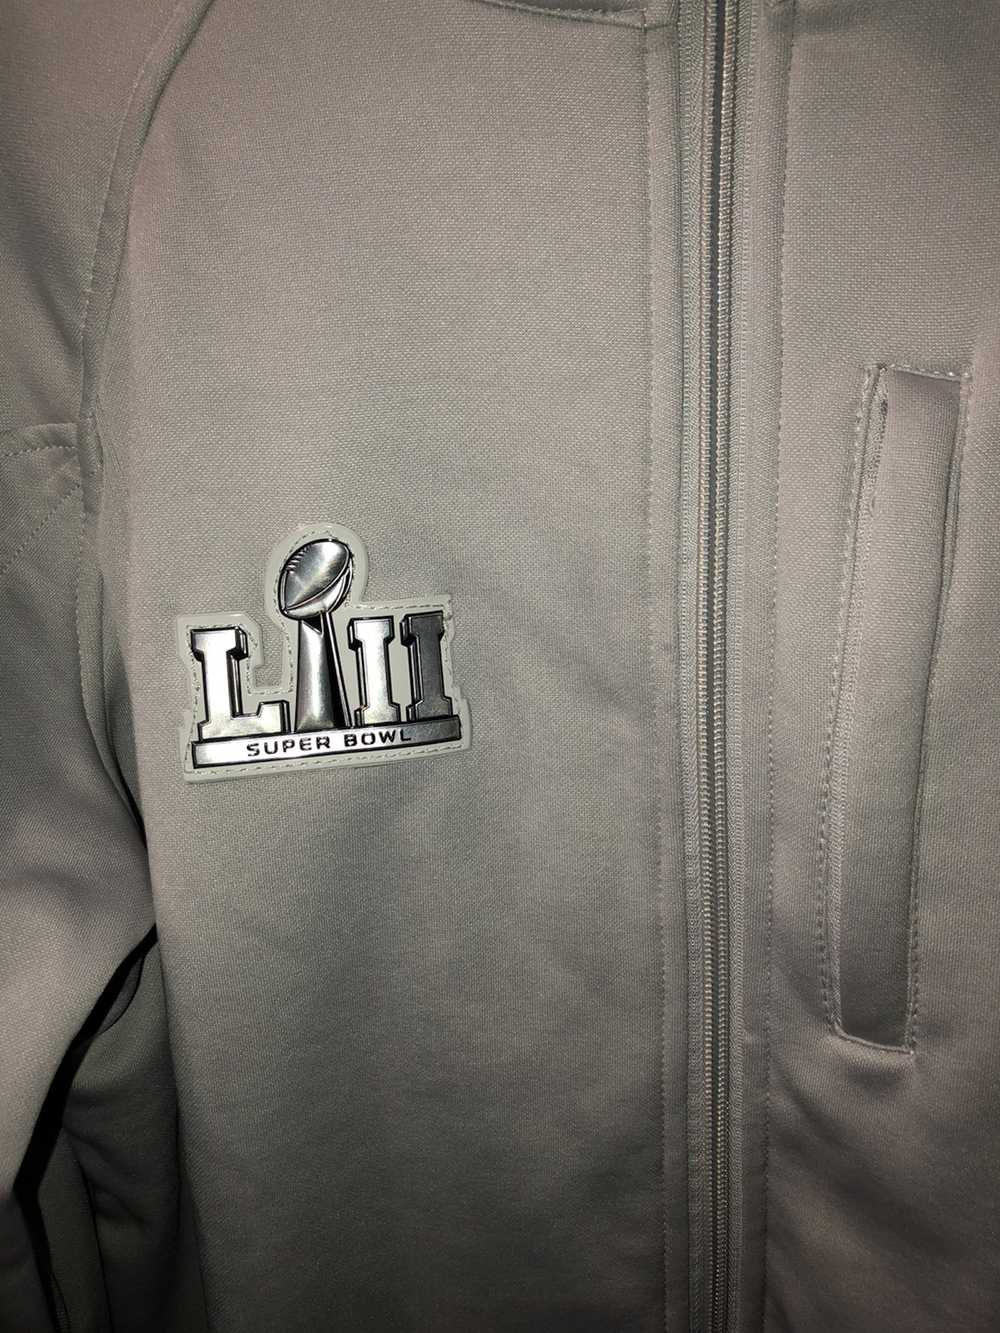 NFL Super Bowl Lii(2017) light jacket - image 2